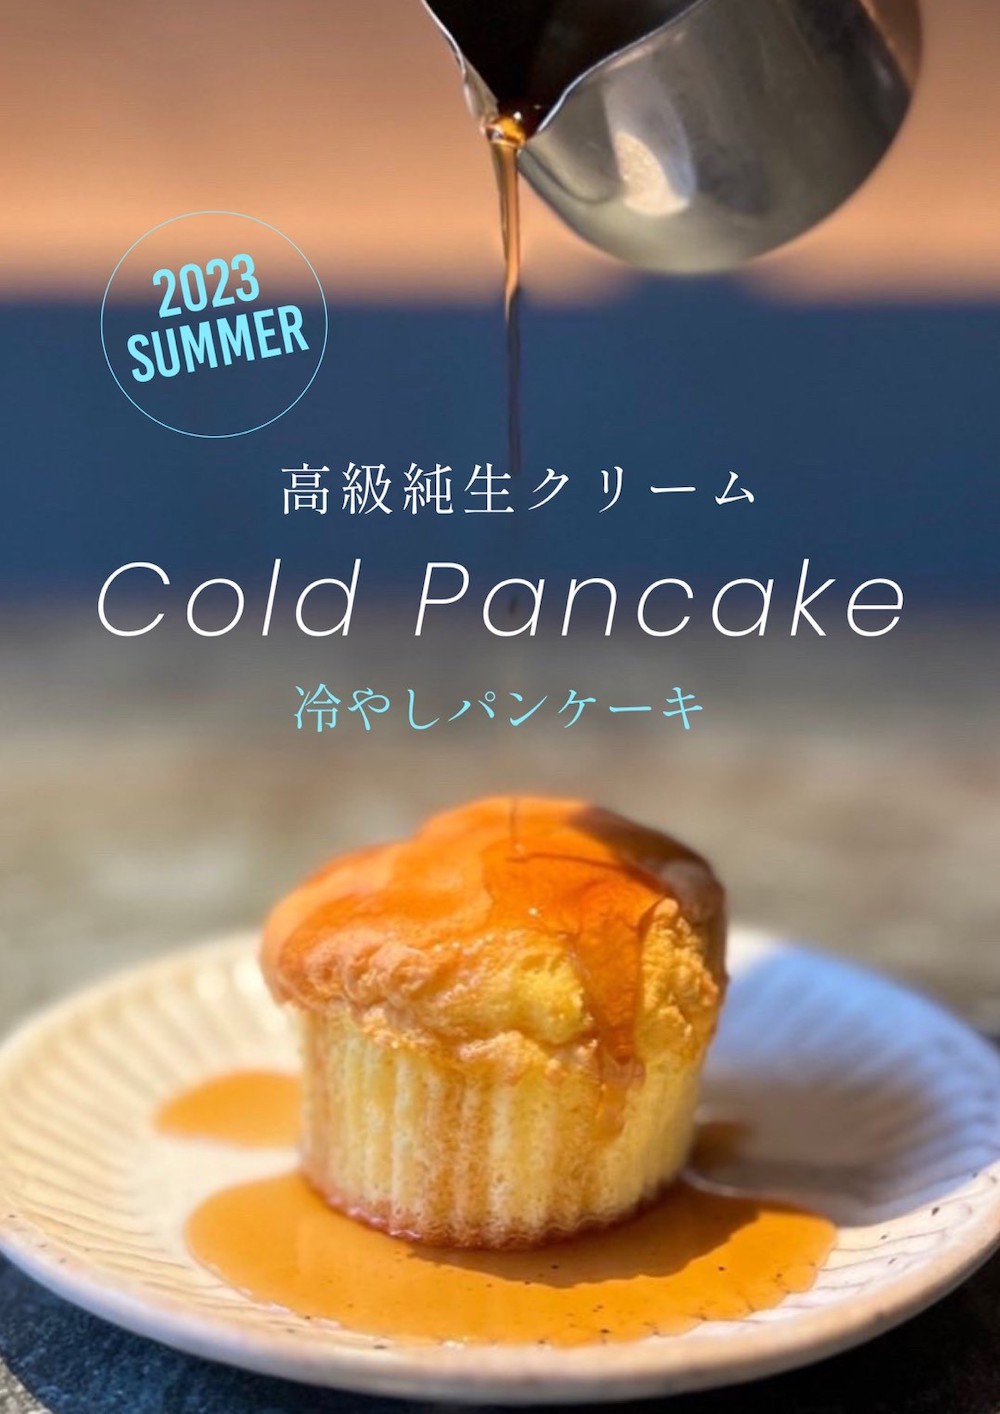 神奈川県平塚市のパン屋「EMILY TEA&BREAD」は、夏の新メニューとして「台湾かき氷」および「冷やしパンケーキ」の販売をスタートした。